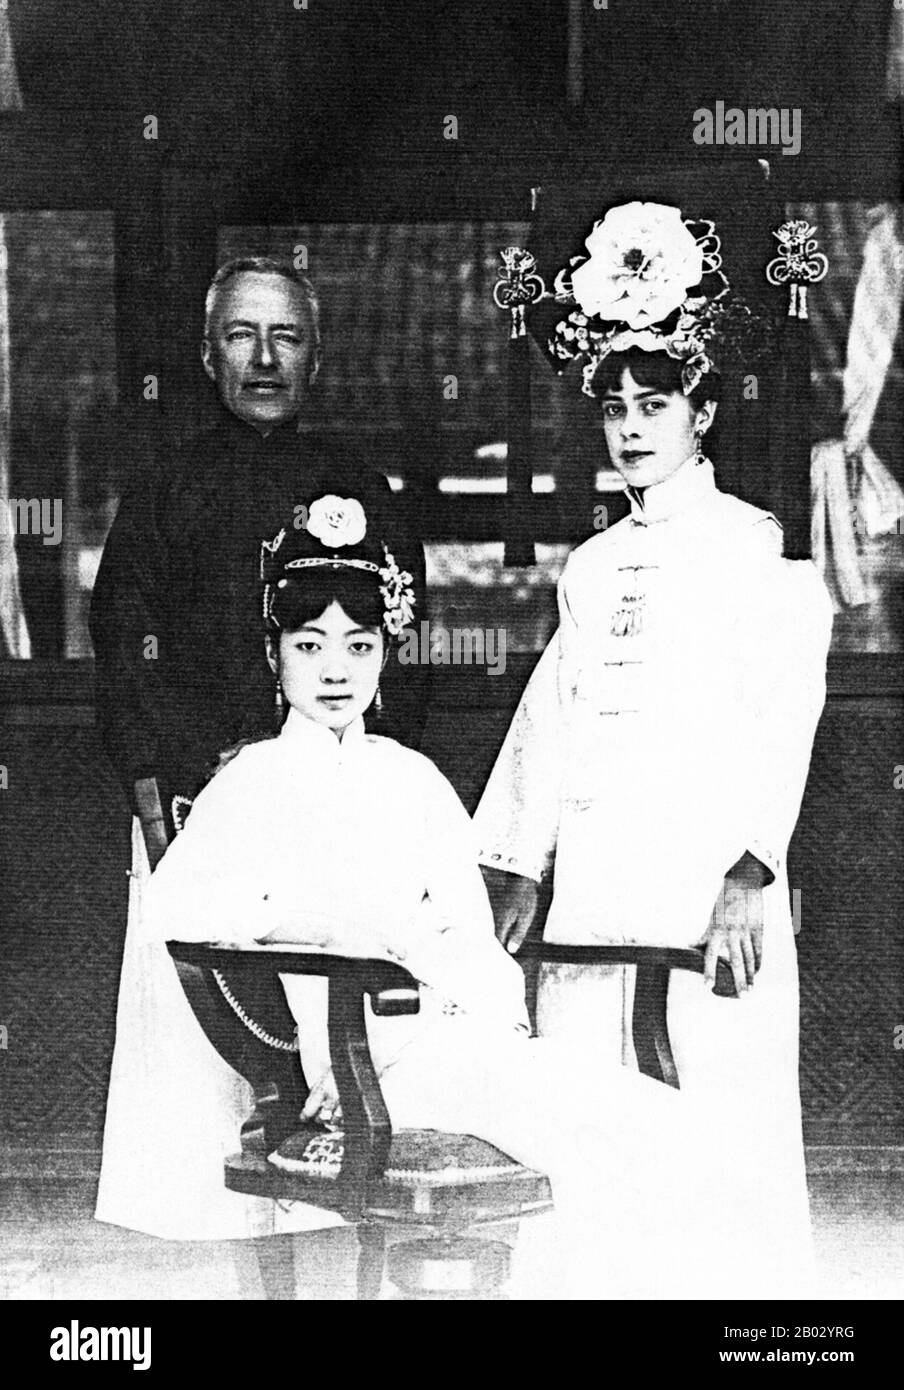 Il Gogulo Wan Rong ('Bello Volto') era la figlia di Rong Yuan, il ministro Degli Affari Interni del governo Qing e capo di una delle famiglie più importanti e ricche della Manciuria. All'età di 17 anni, Wan Rong è stato selezionato da una serie di fotografie presentate all'imperatore Xuan Tong (Puyi). Il matrimonio ebbe luogo quando Puyi raggiunse i 16 anni. WAN Rong è stato l'ultimo Imperatrice Consort della Dinastia Qing in Cina, e poi l'Imperatrice di Manchukuo (conosciuto anche come Impero Manchuriano). Empress Wan Rong morì di malnutrizione e dipendenza da oppio in prigione a Jilin. Sir Reginald Fleming Foto Stock